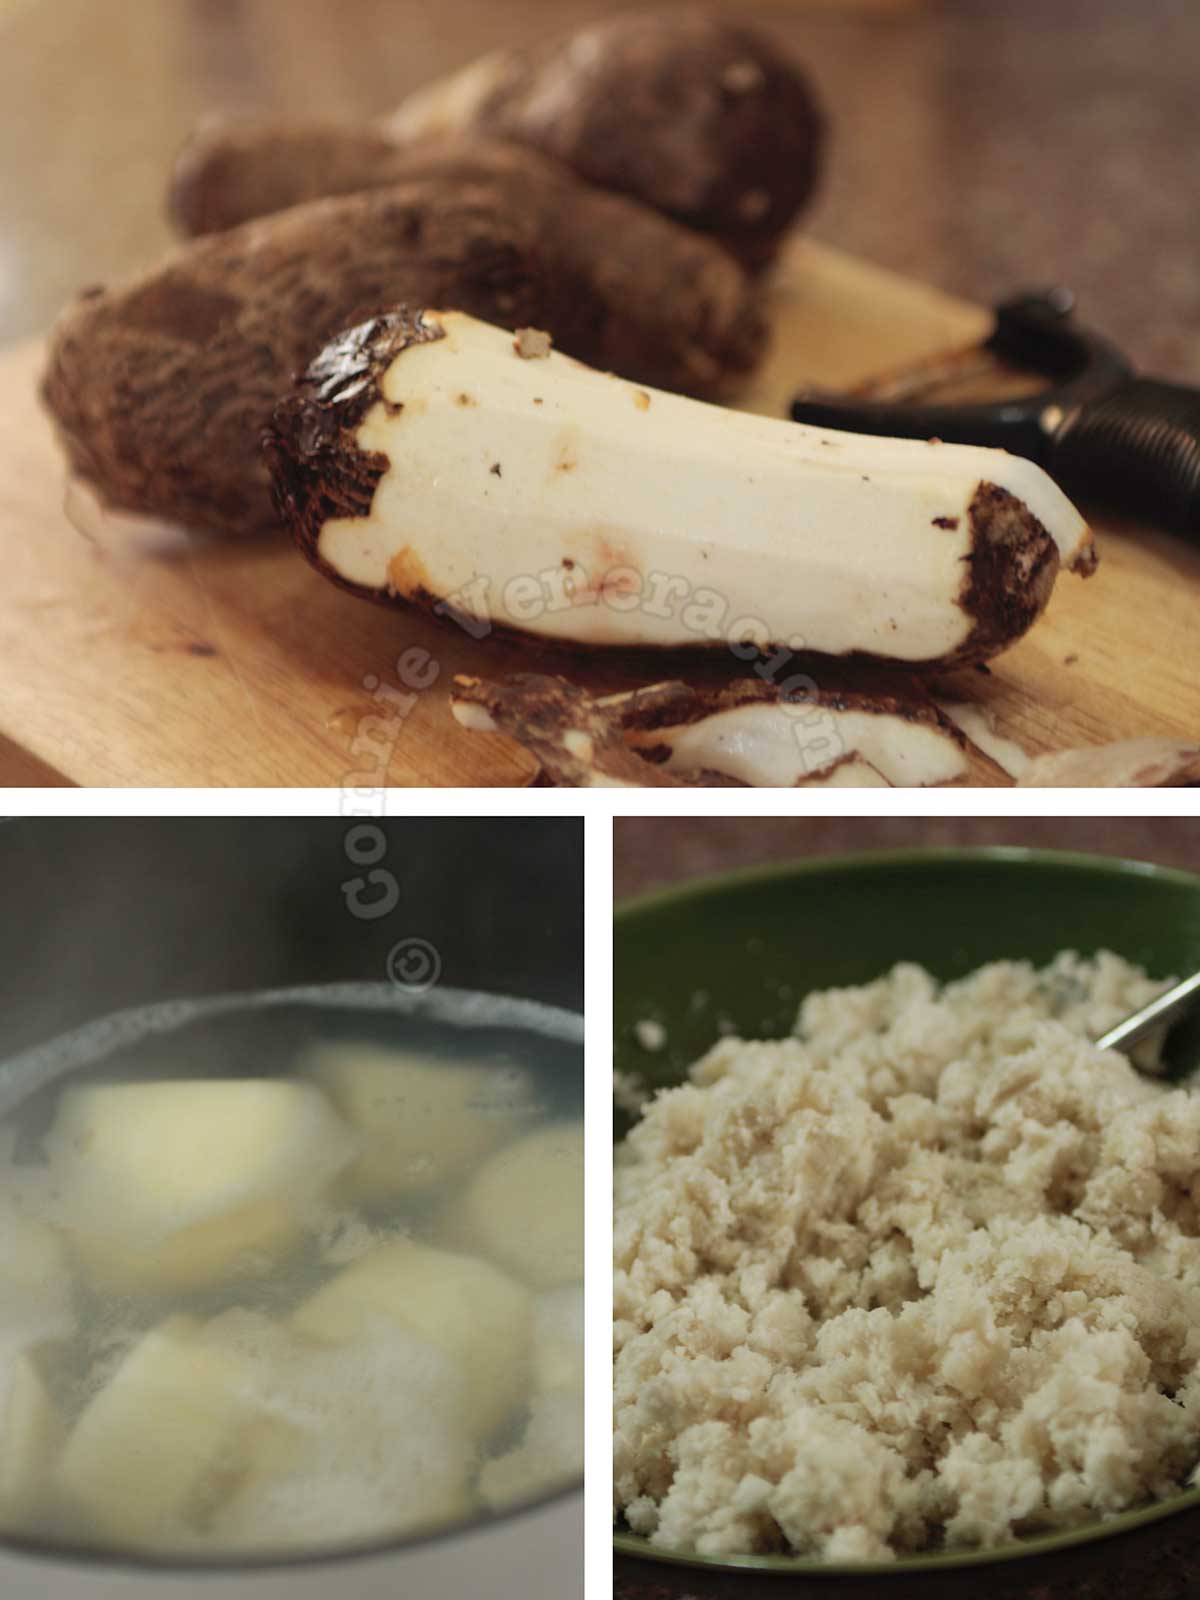 Peeled, boiled and mashed taro